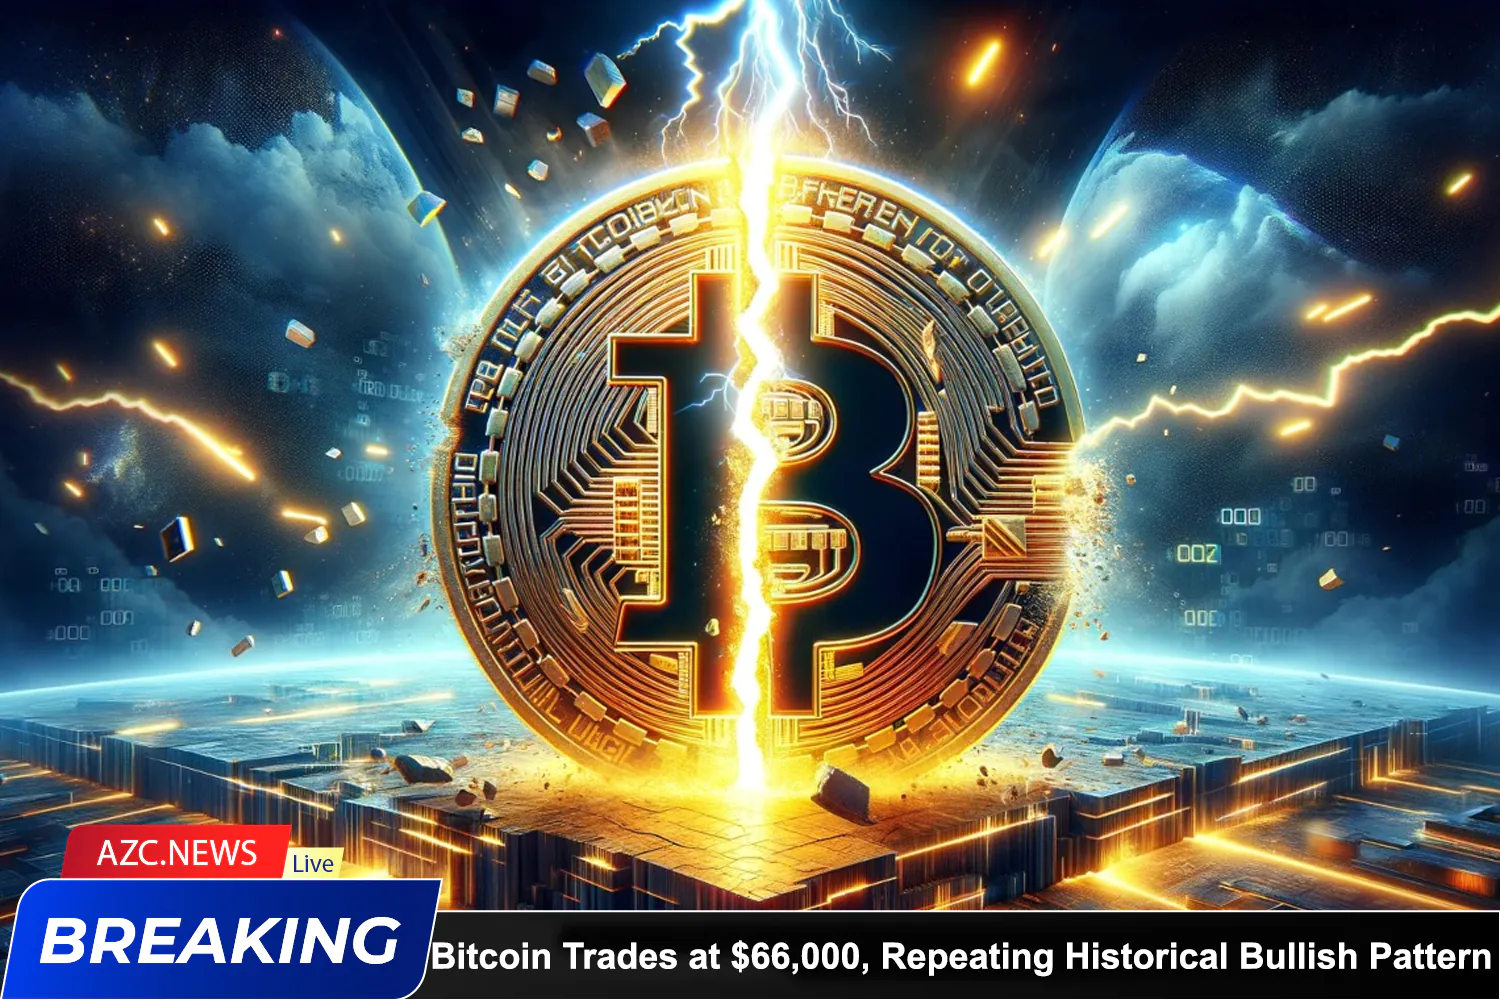 Azcnews Bitcoin Trades At $66,000, Repeating Historical Bullish Pattern